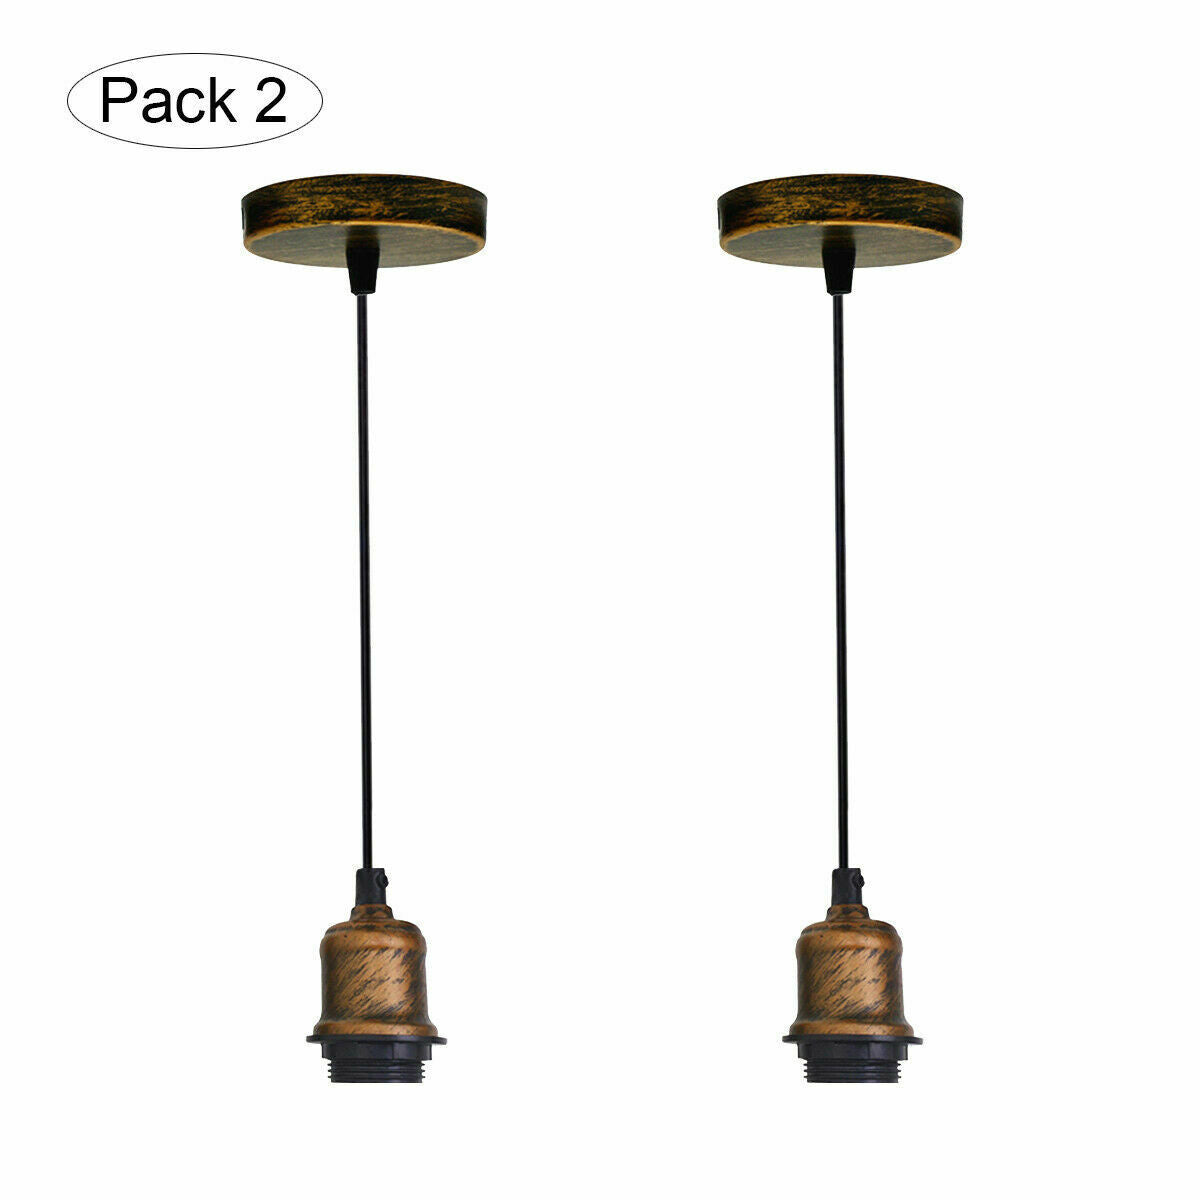 Vintage hanging Pendant light with Socket Lamp Holder